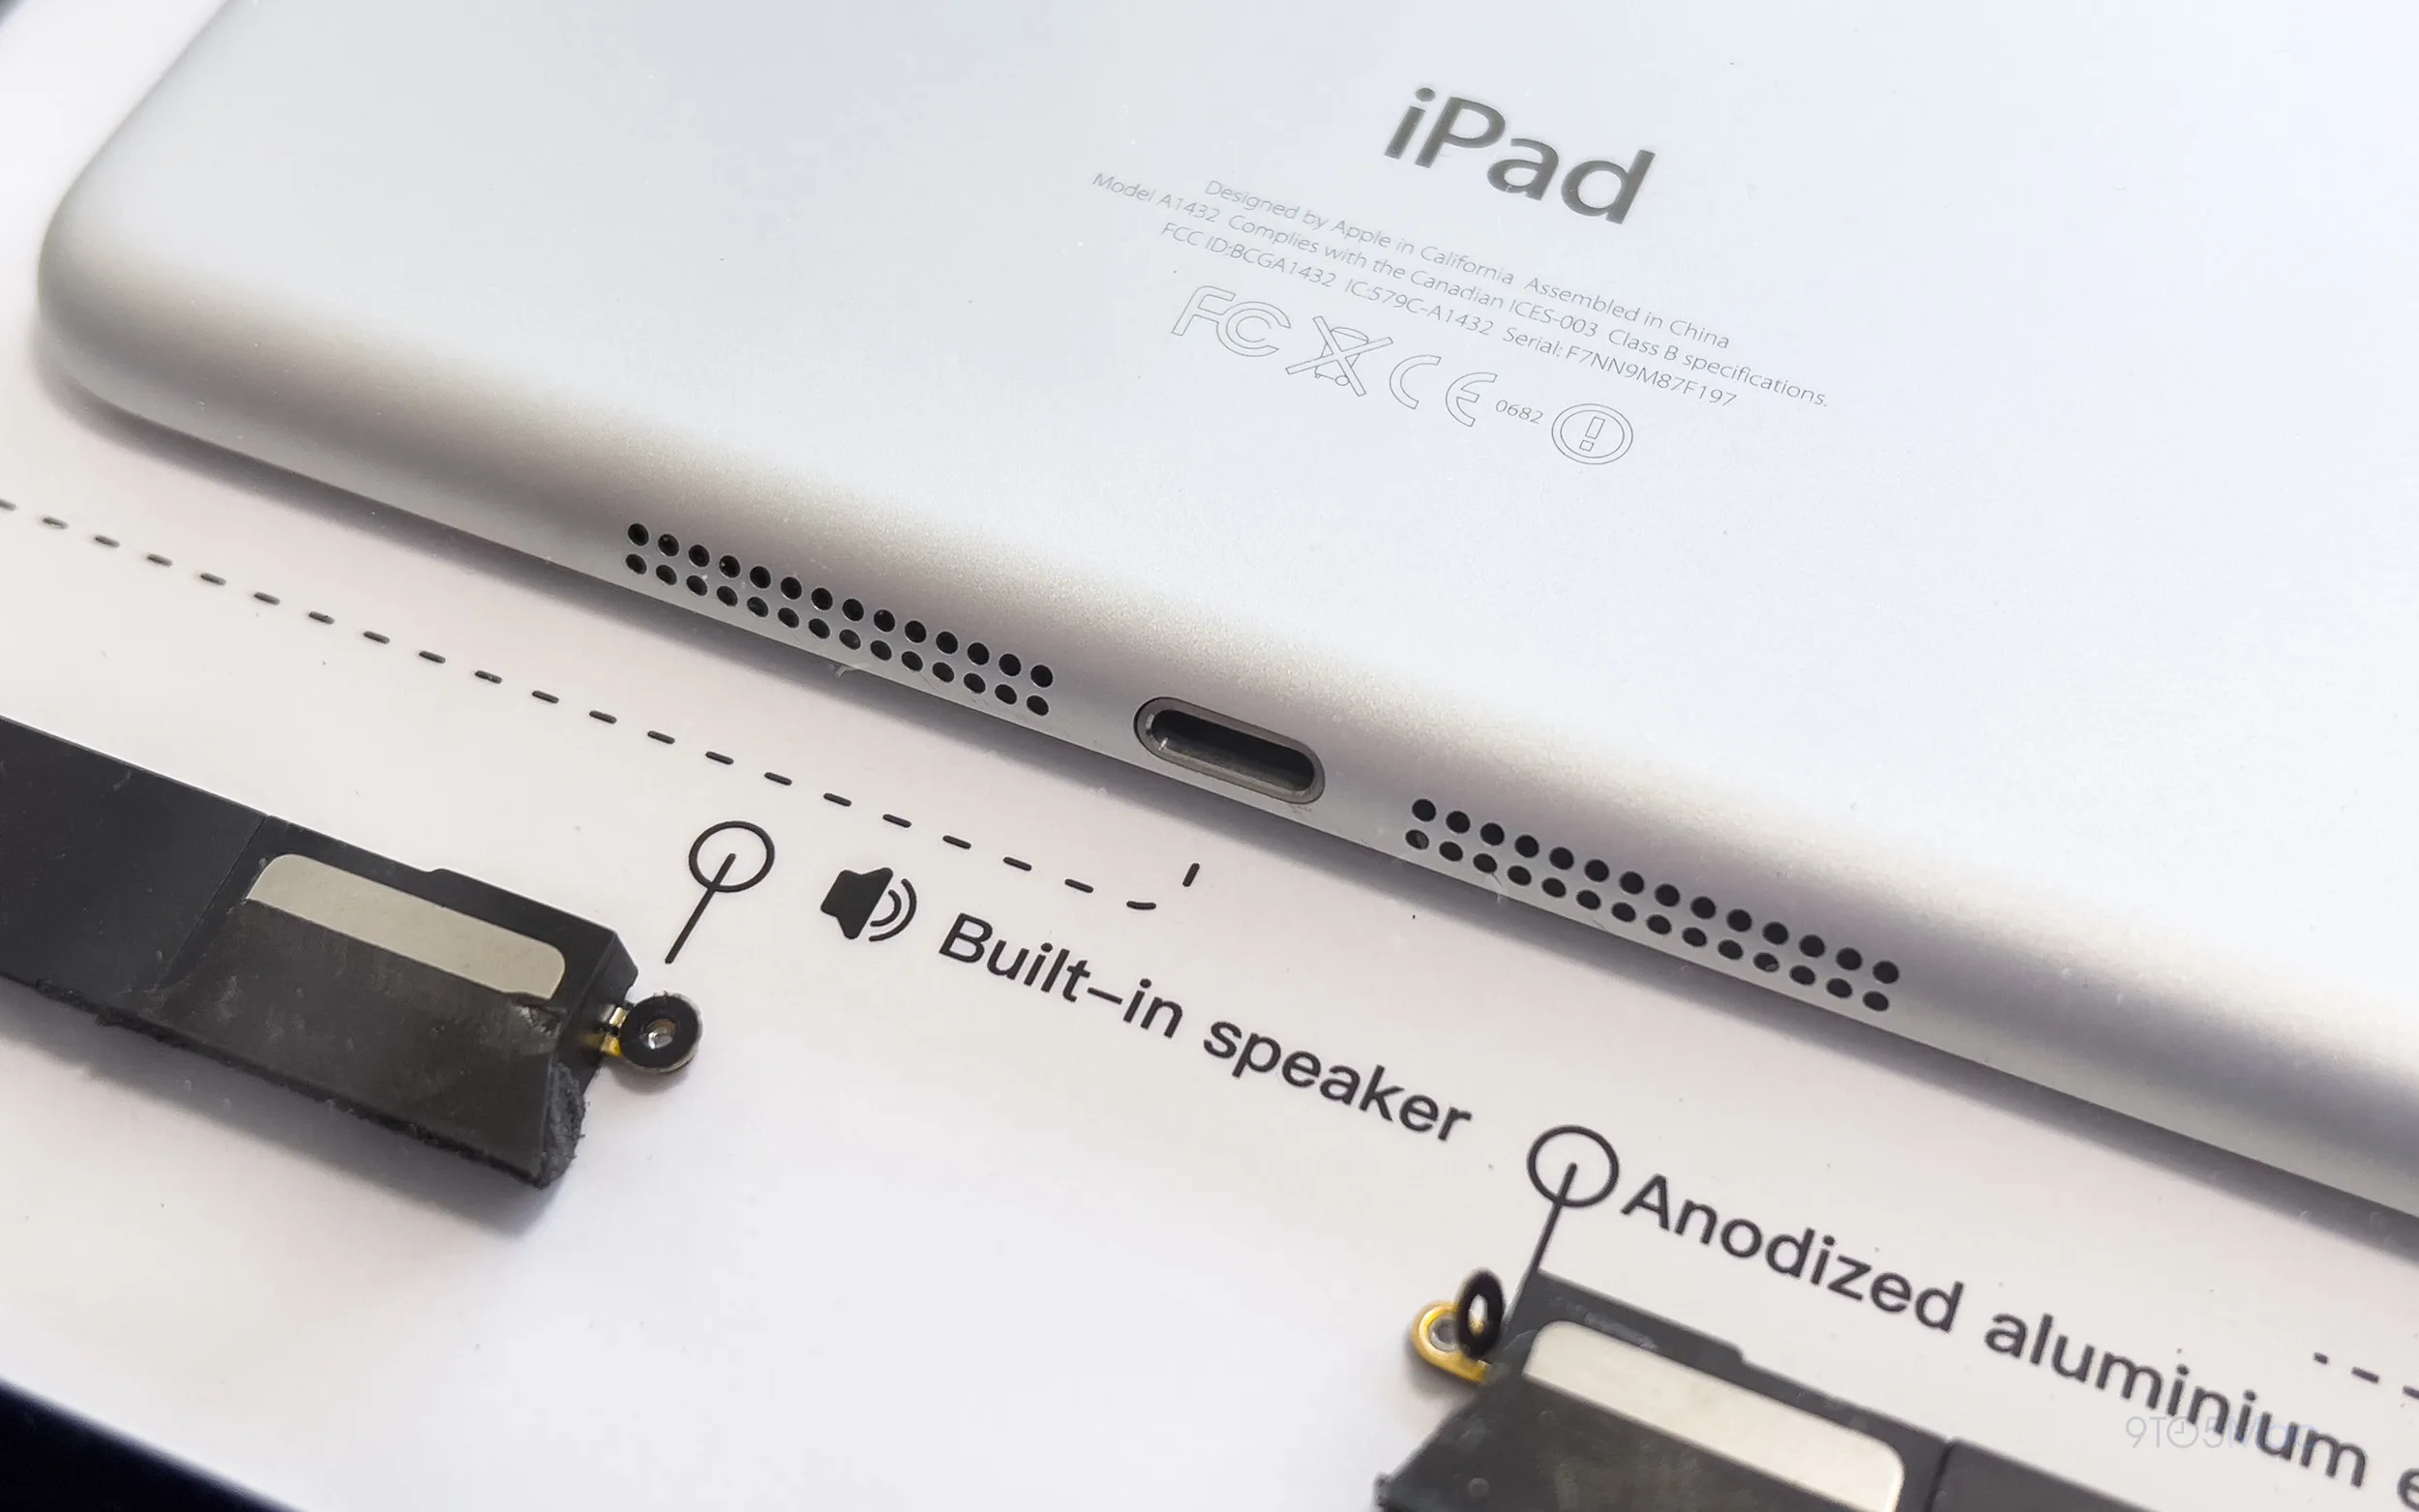 iPad mini thế hệ đầu tiên được GRID tháo rời và đóng khung